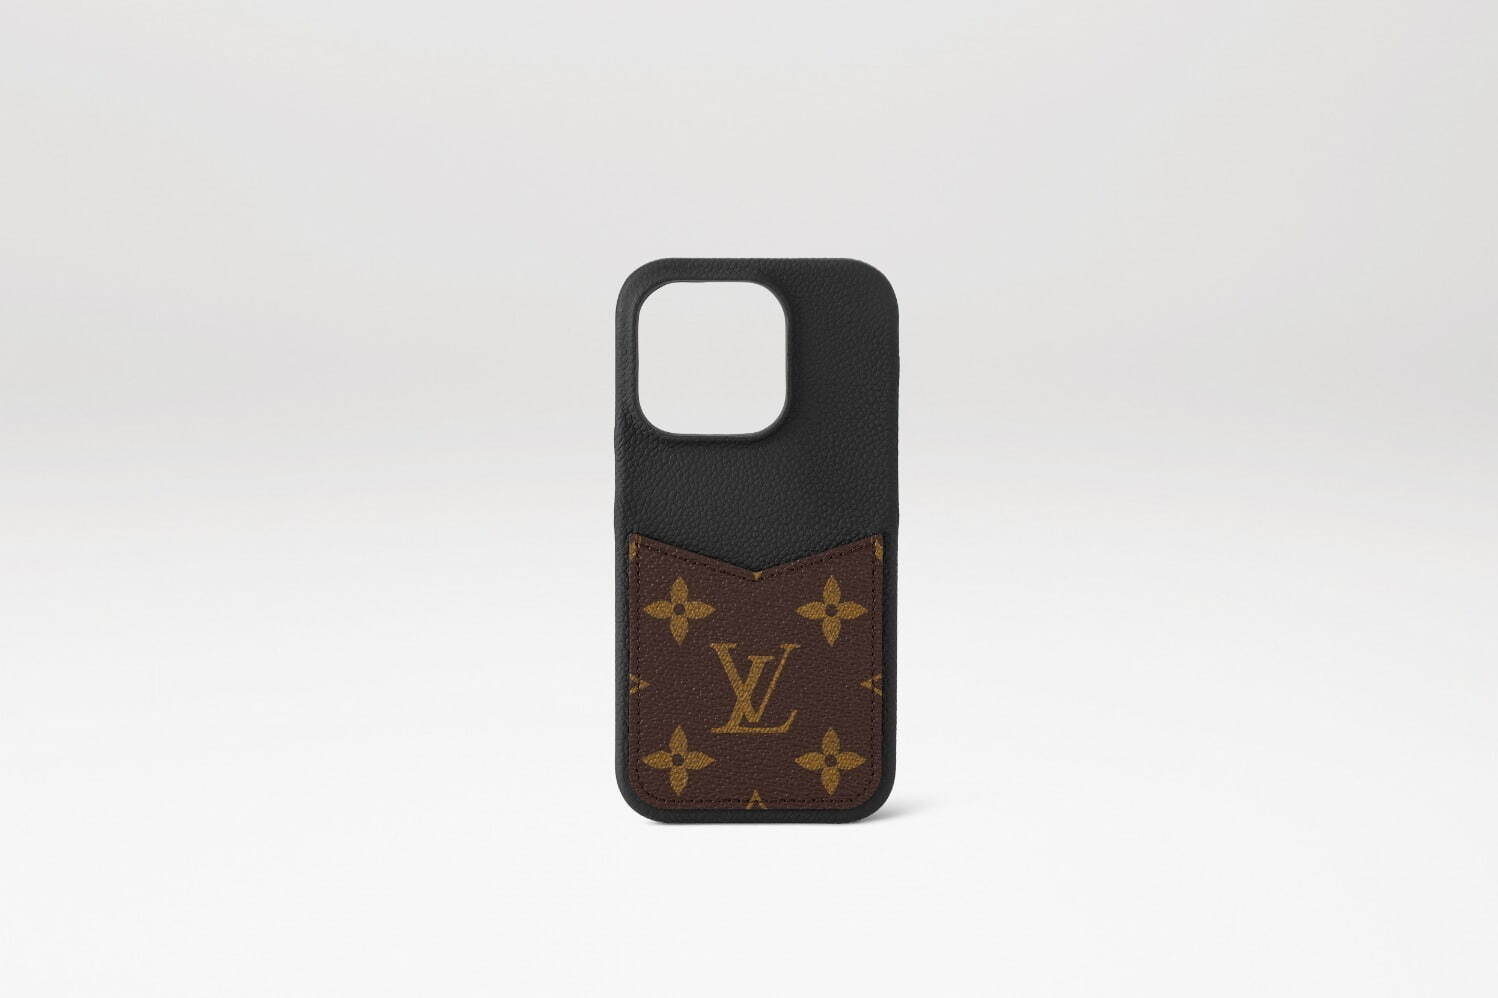 ルイ・ヴィトン“モノグラム・キャンバス”の新作iPhoneケース、カードも ...